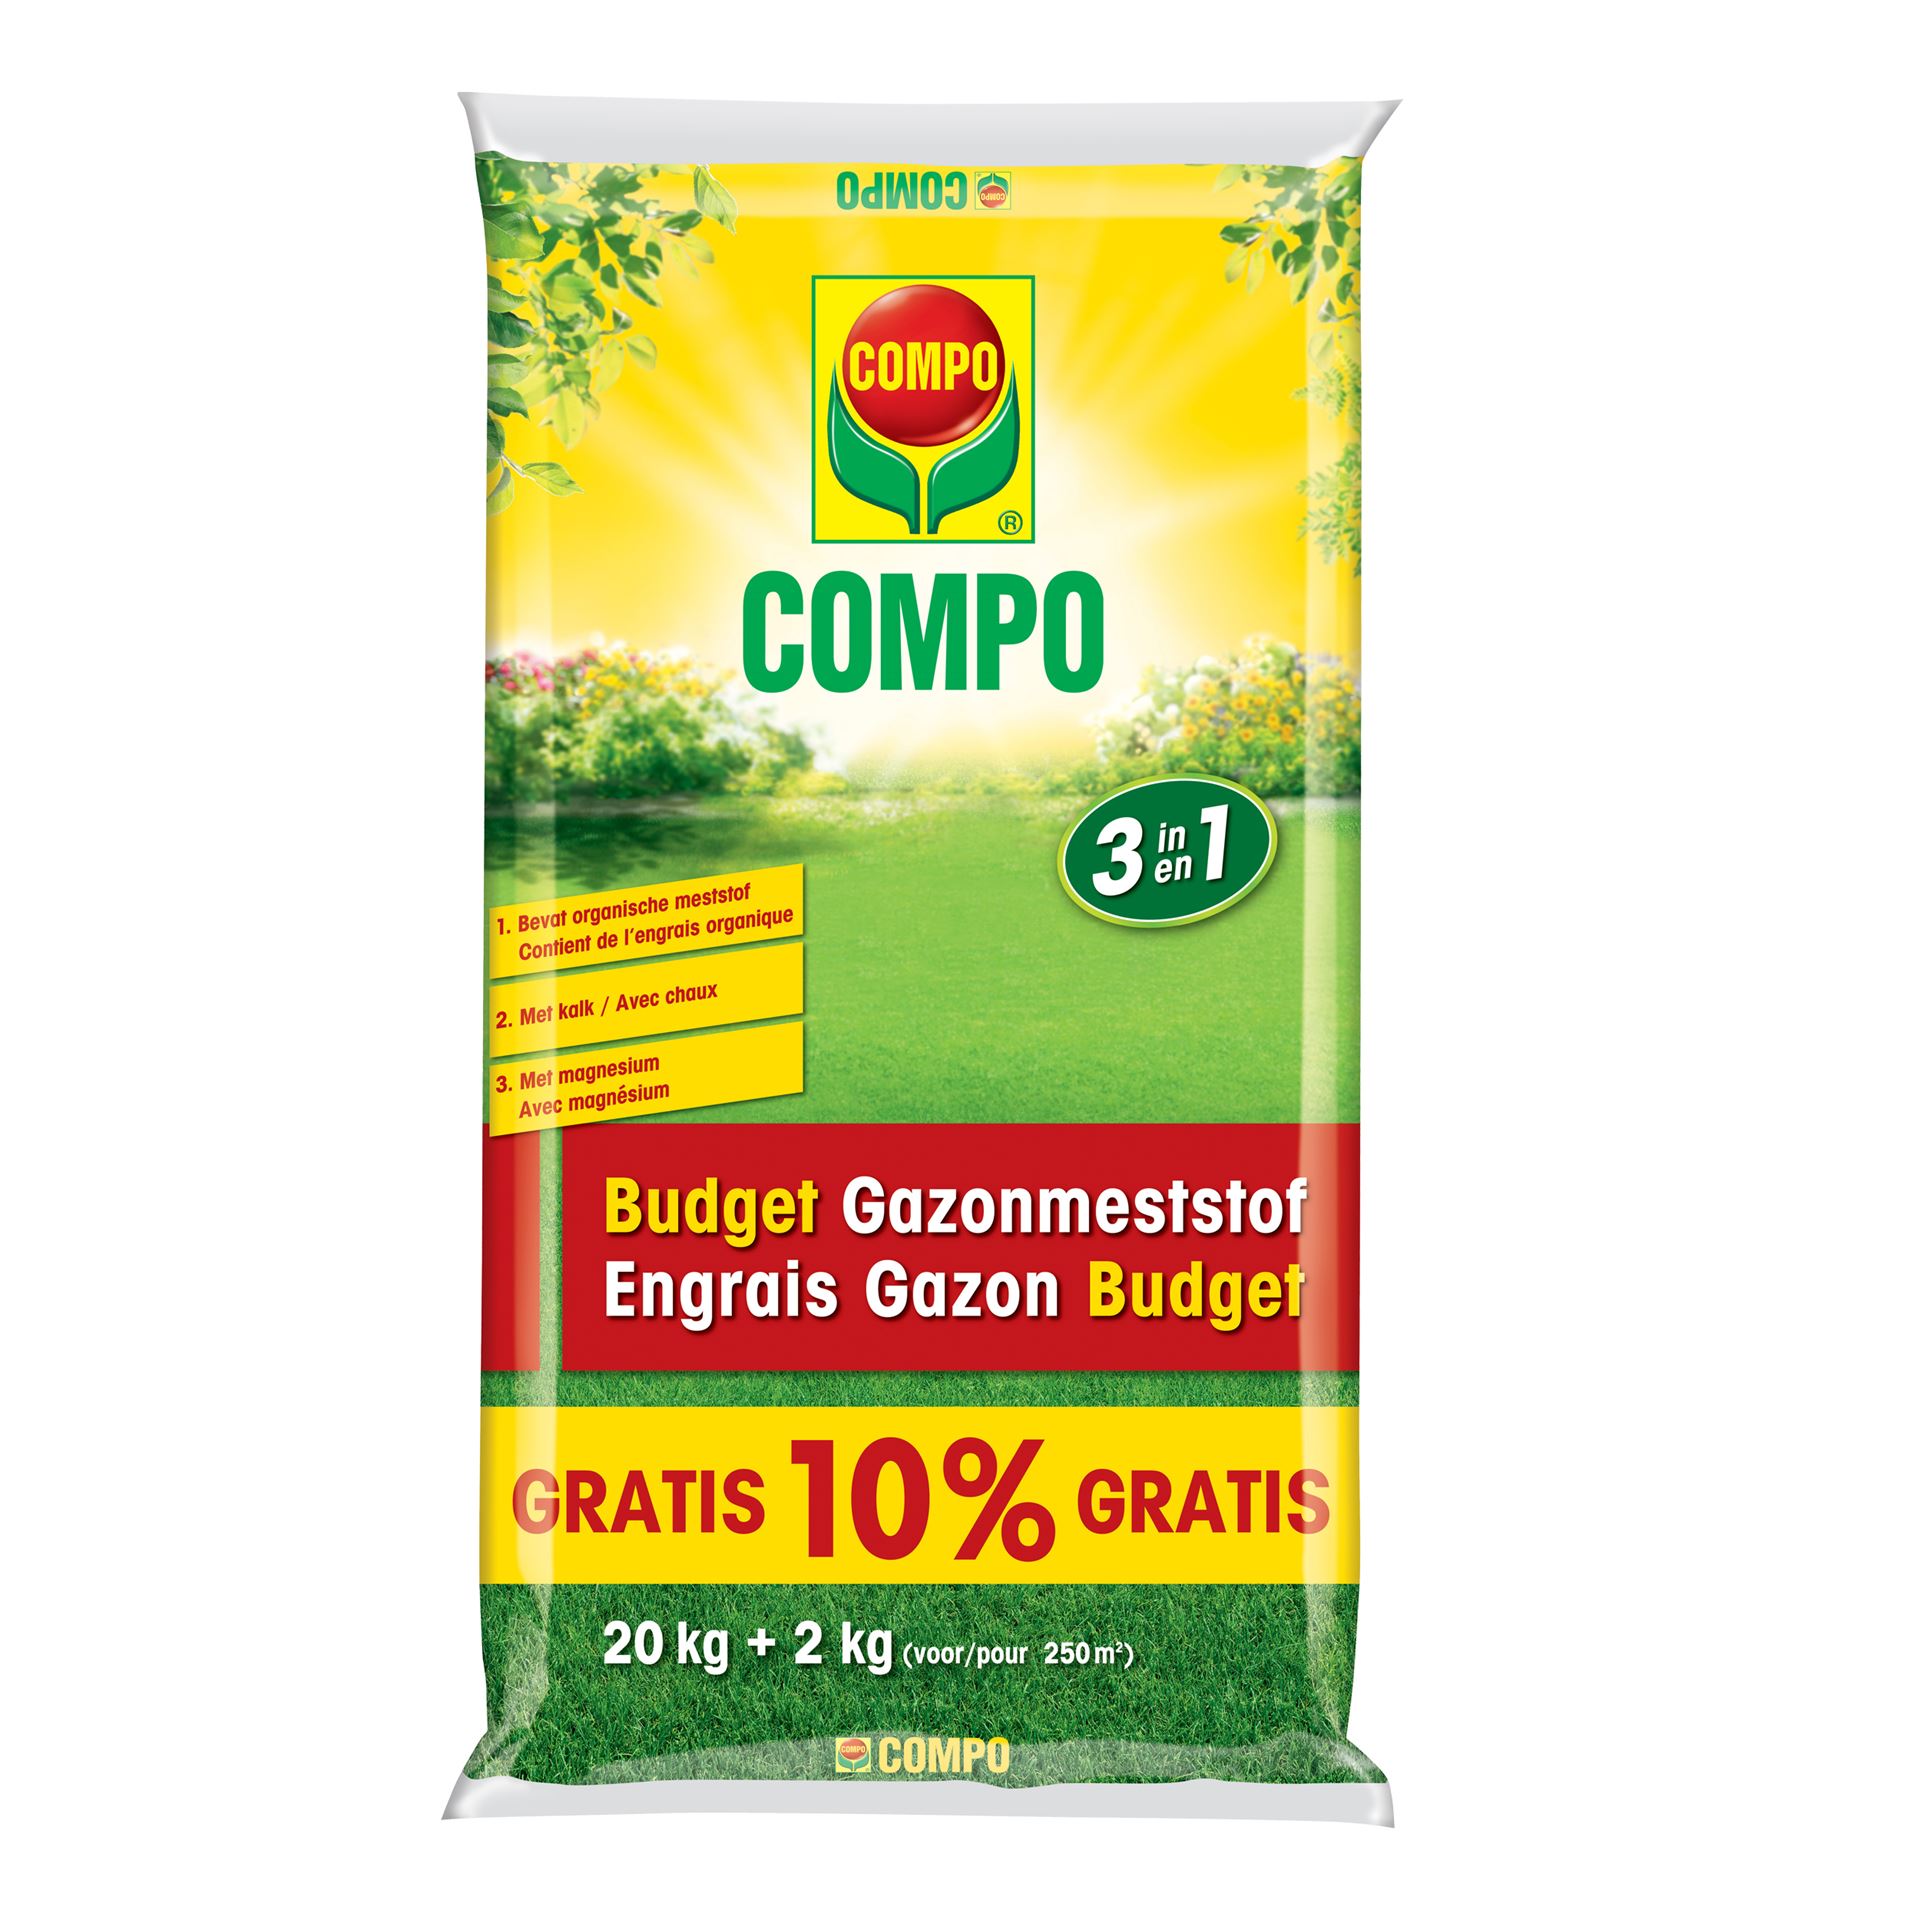 Compo-com-budget-gazonmeststof-250-m-22kg-20-2kg-gratis-